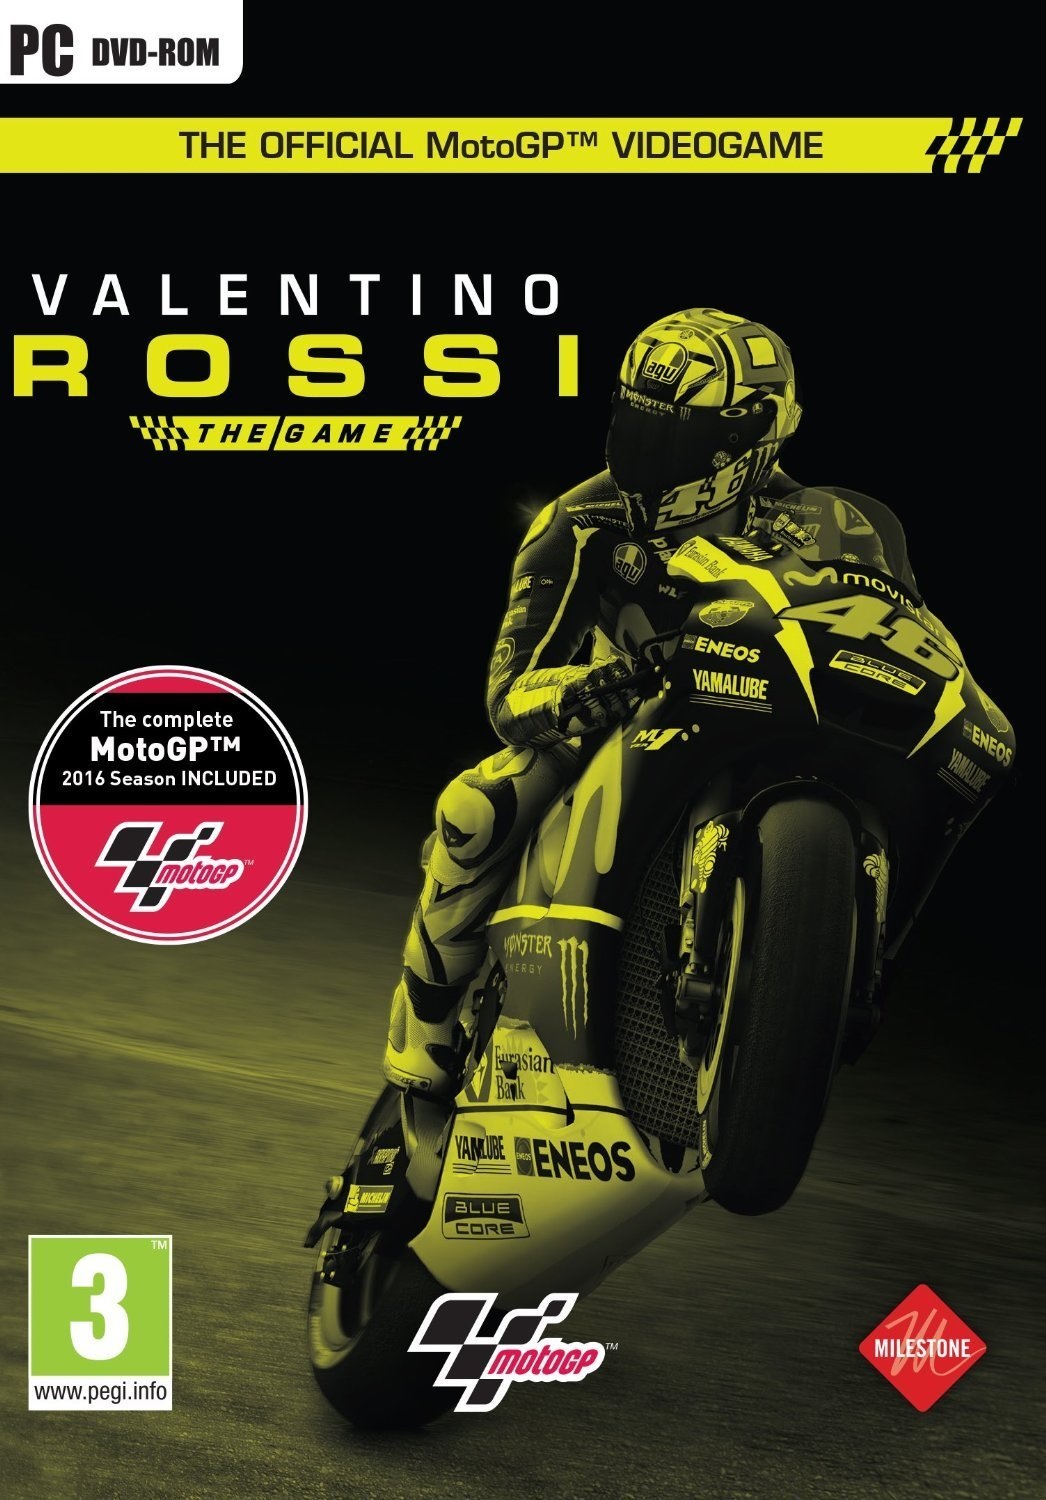 MotoGP16: Valentino Rossi (PC DVD)